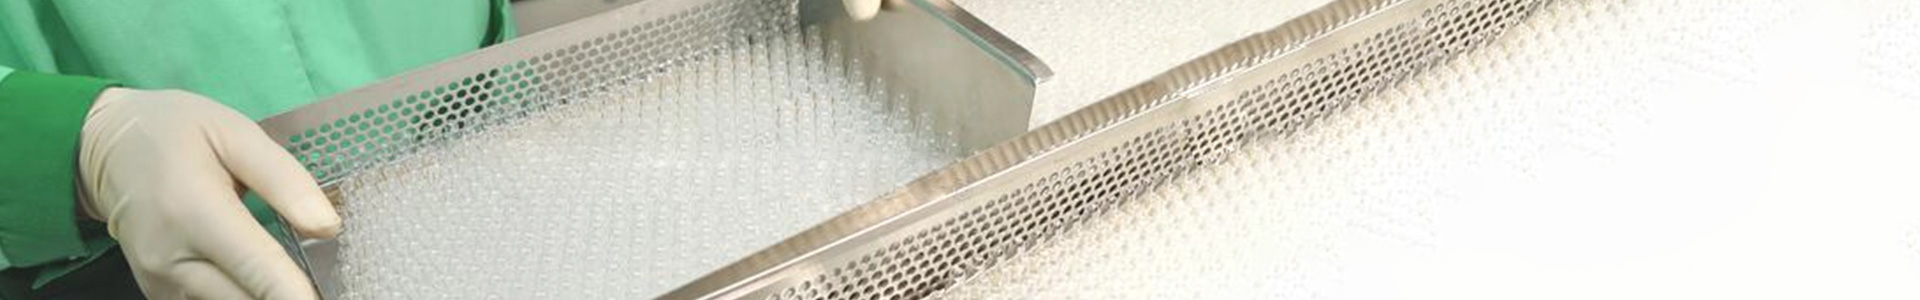 esterilizador de ampolla de vidrio de esterilización en autoclave